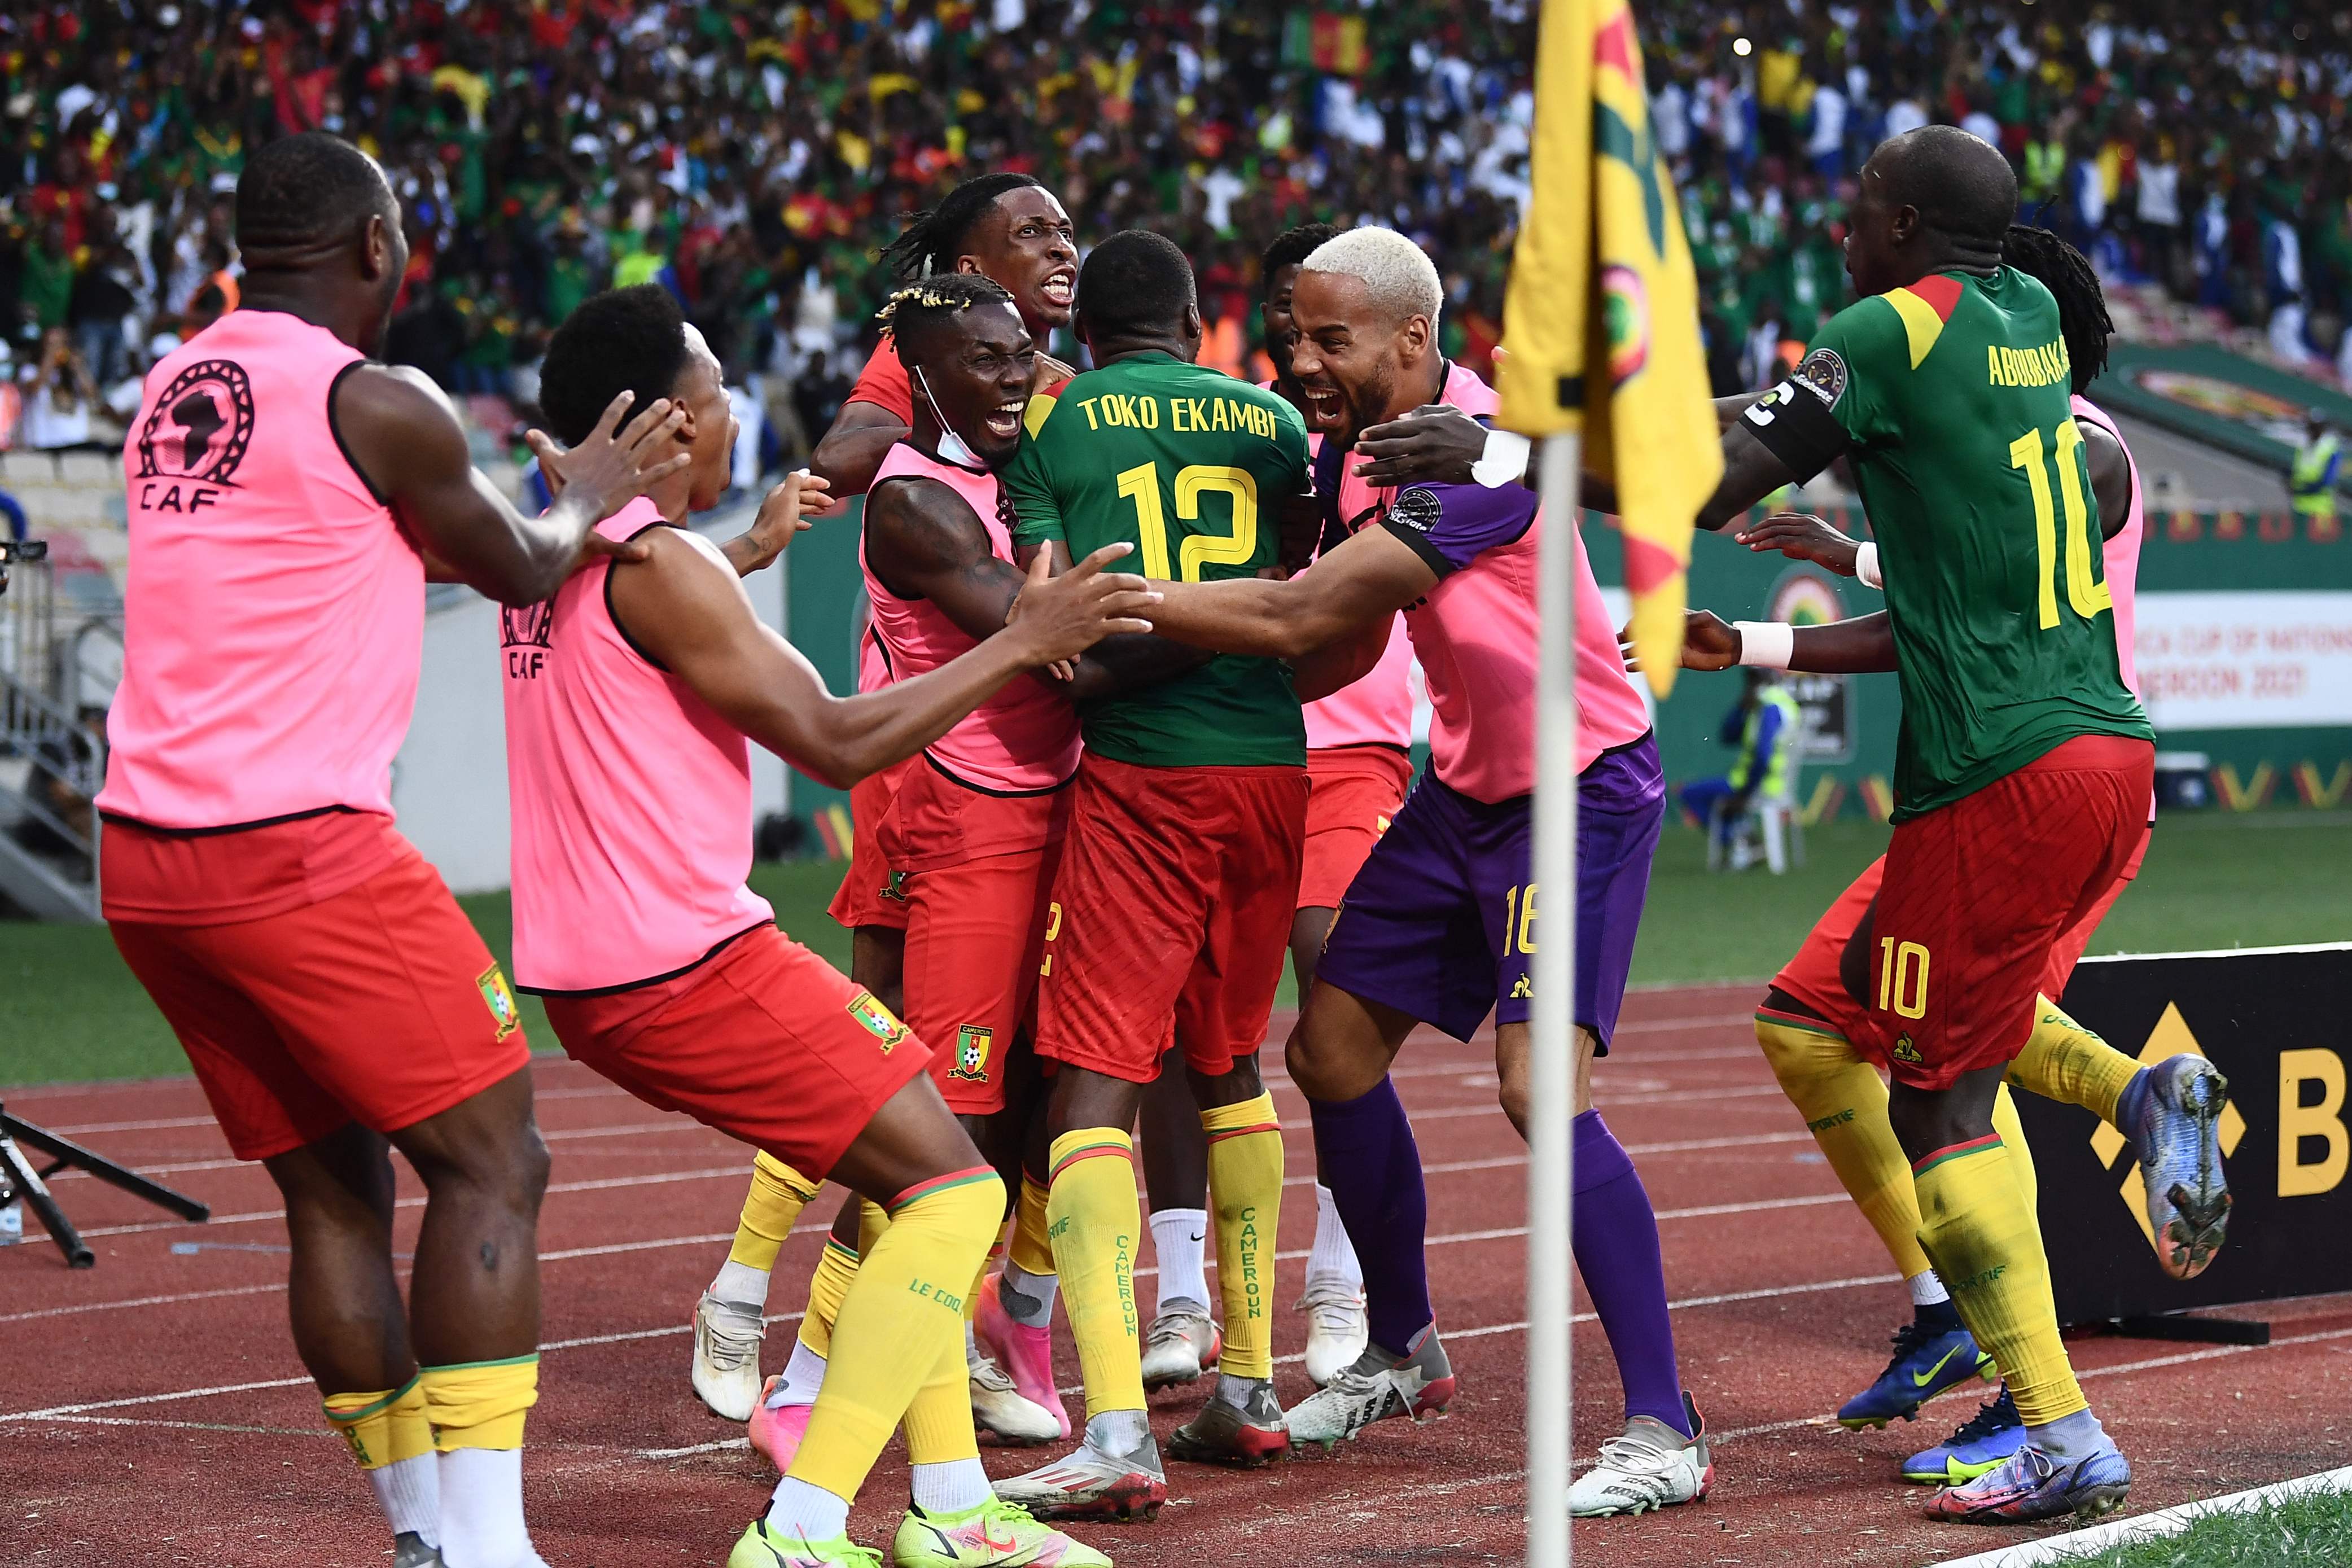 Karl Toko Ekambi celebrates after scoring